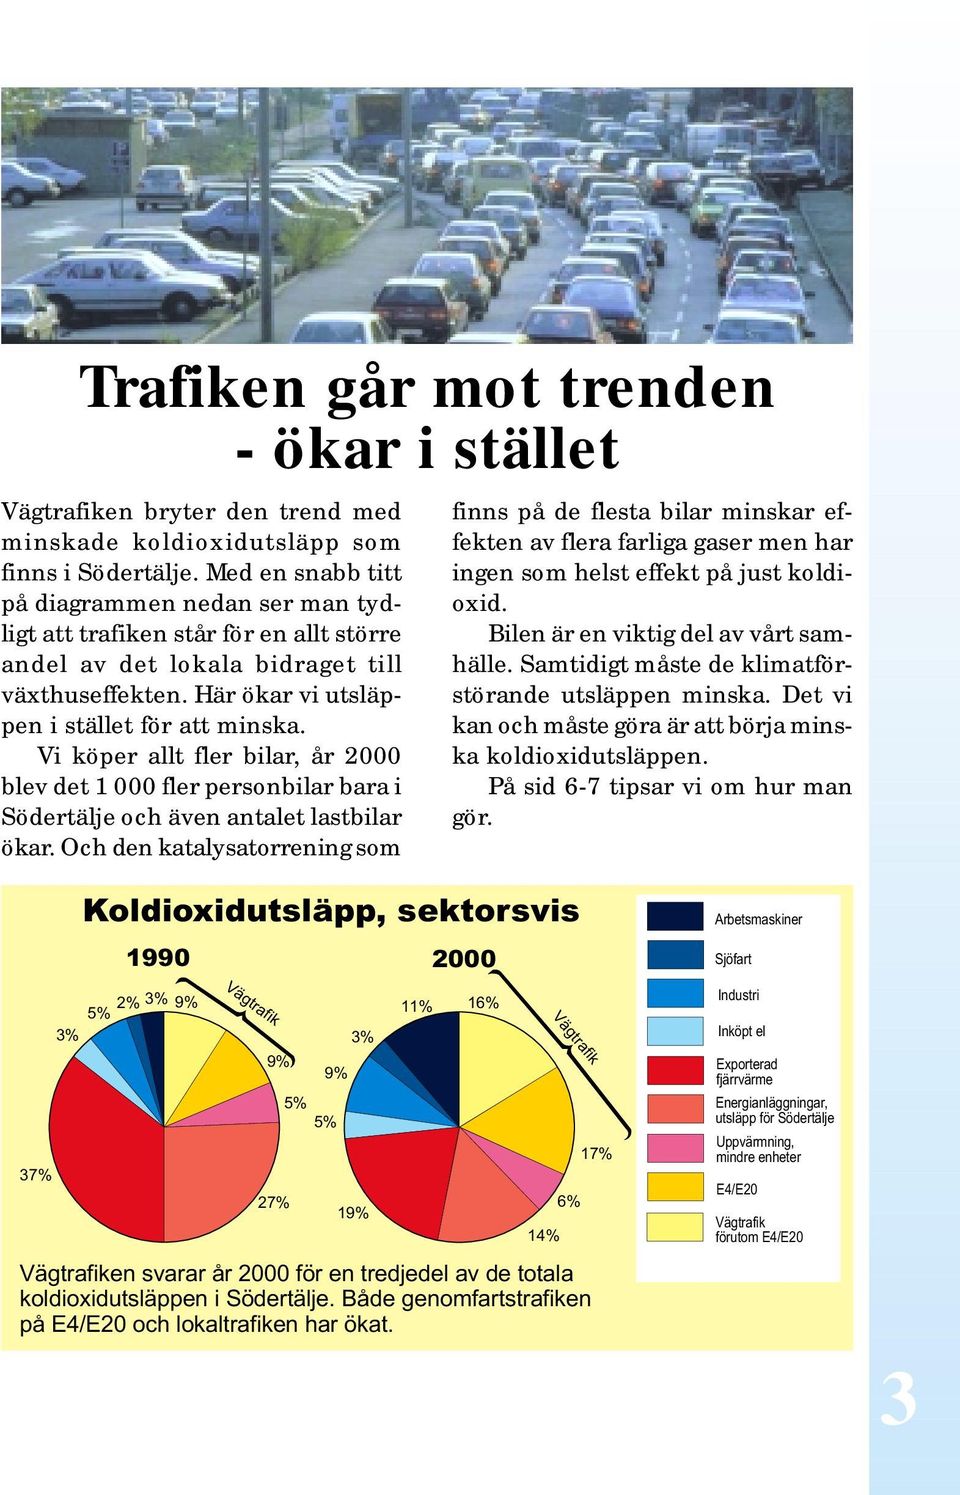 Vi köper allt fler bilar, år 2000 blev det 1 000 fler personbilar bara i Södertälje och även antalet lastbilar ökar.